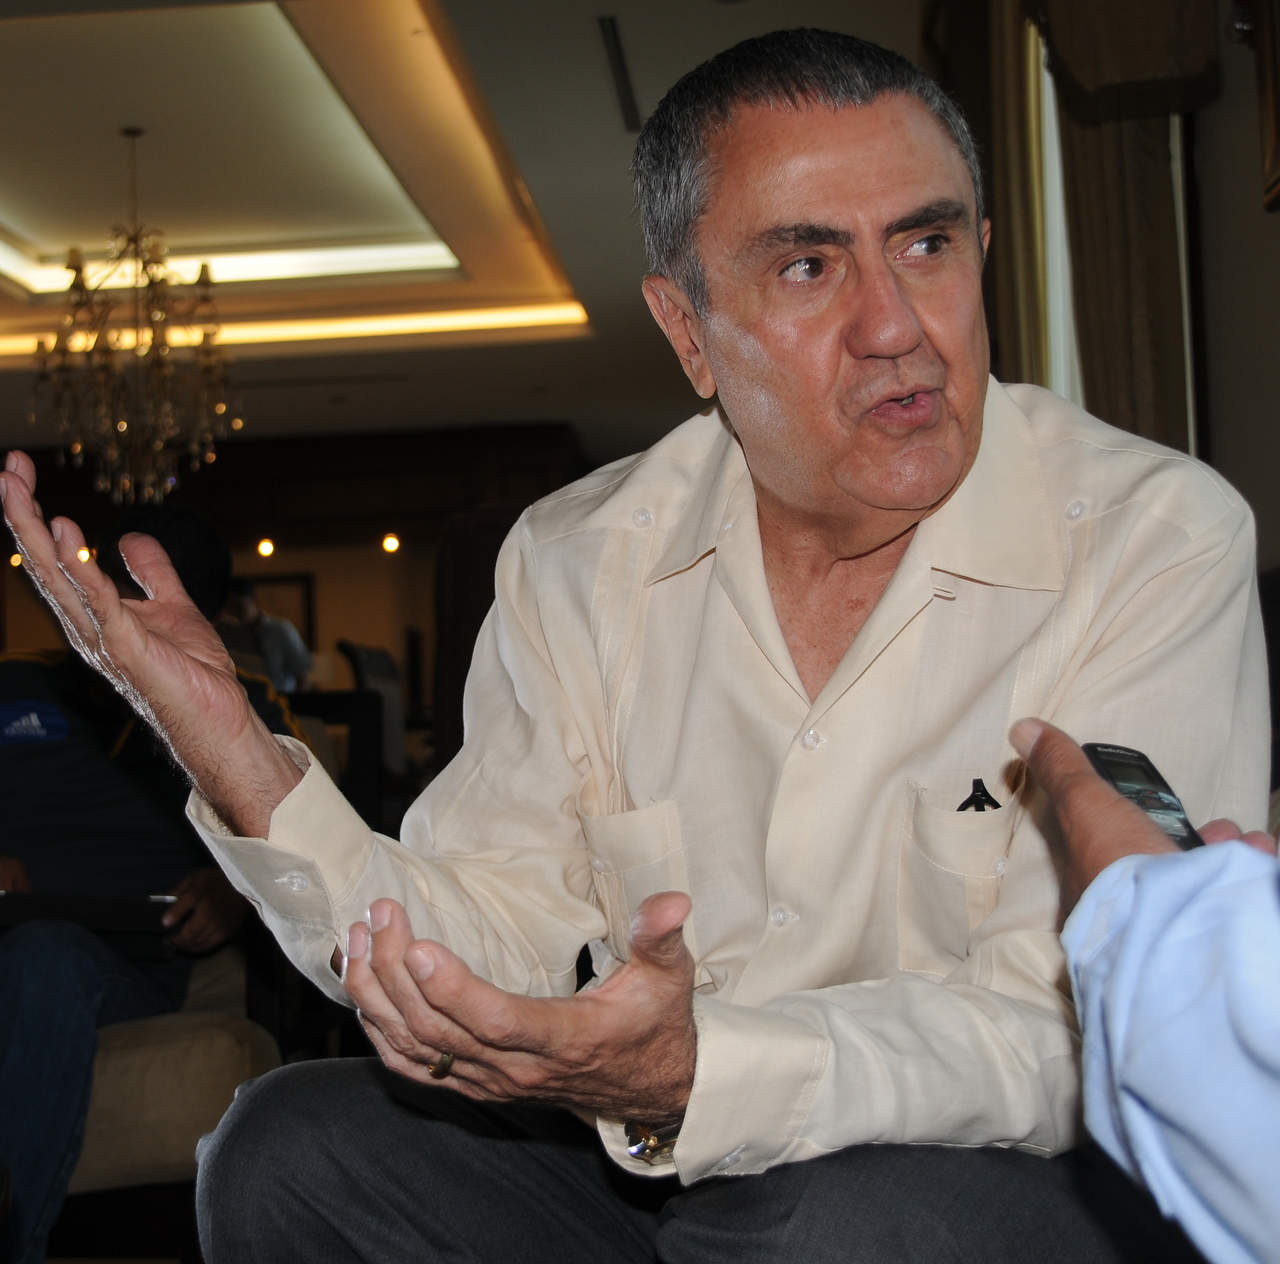 El presidente de los Tigres, Alejandro Rodríguez, mencionó que la reprogramación del partido se realizó considerando los reglamentos de la liga. (Archivo)